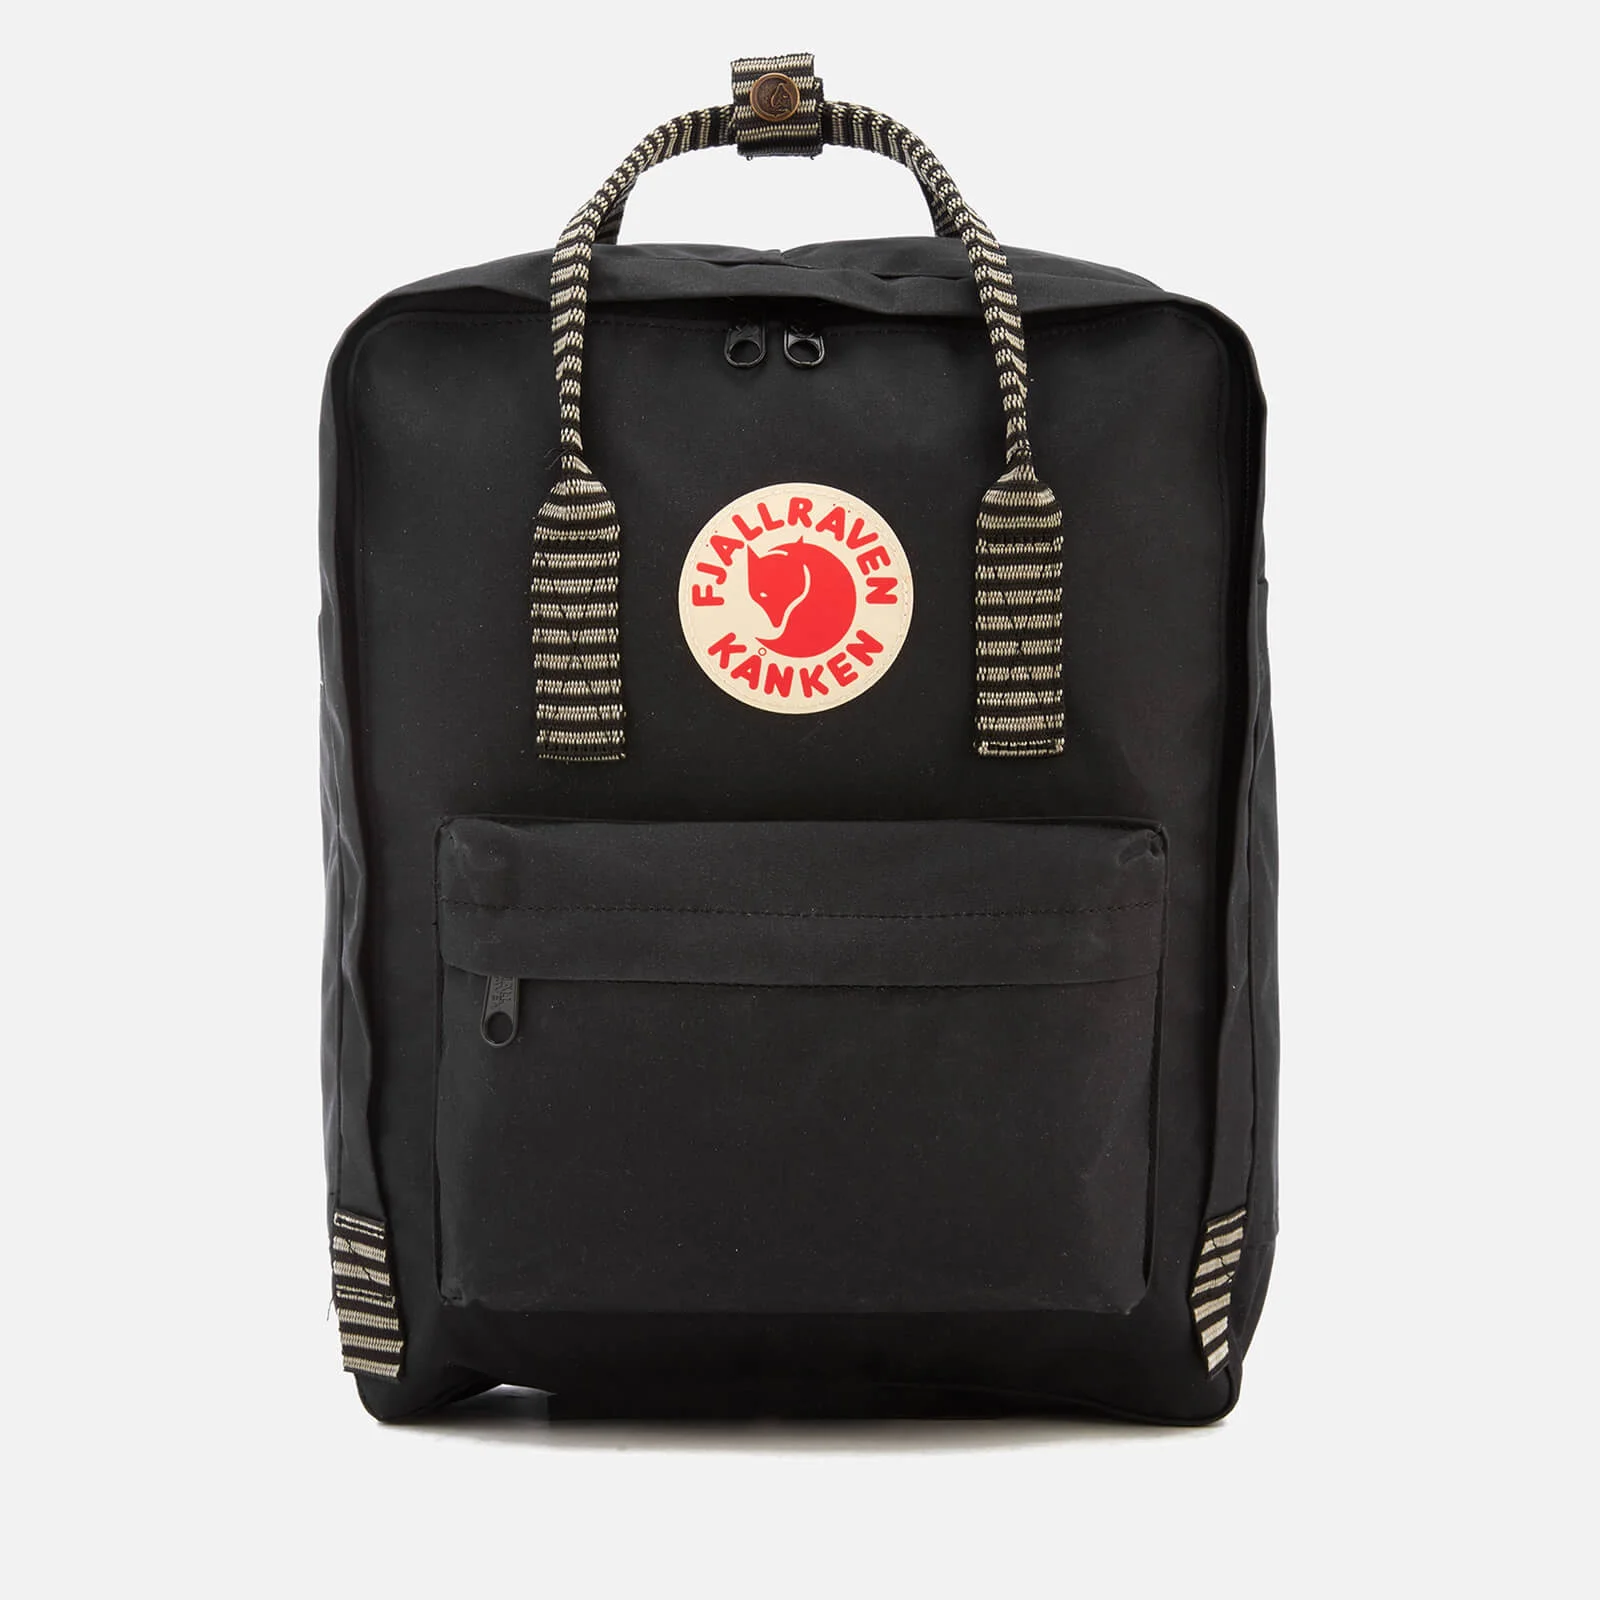 Fjallraven Kanken Backpack - Black/Striped Image 1